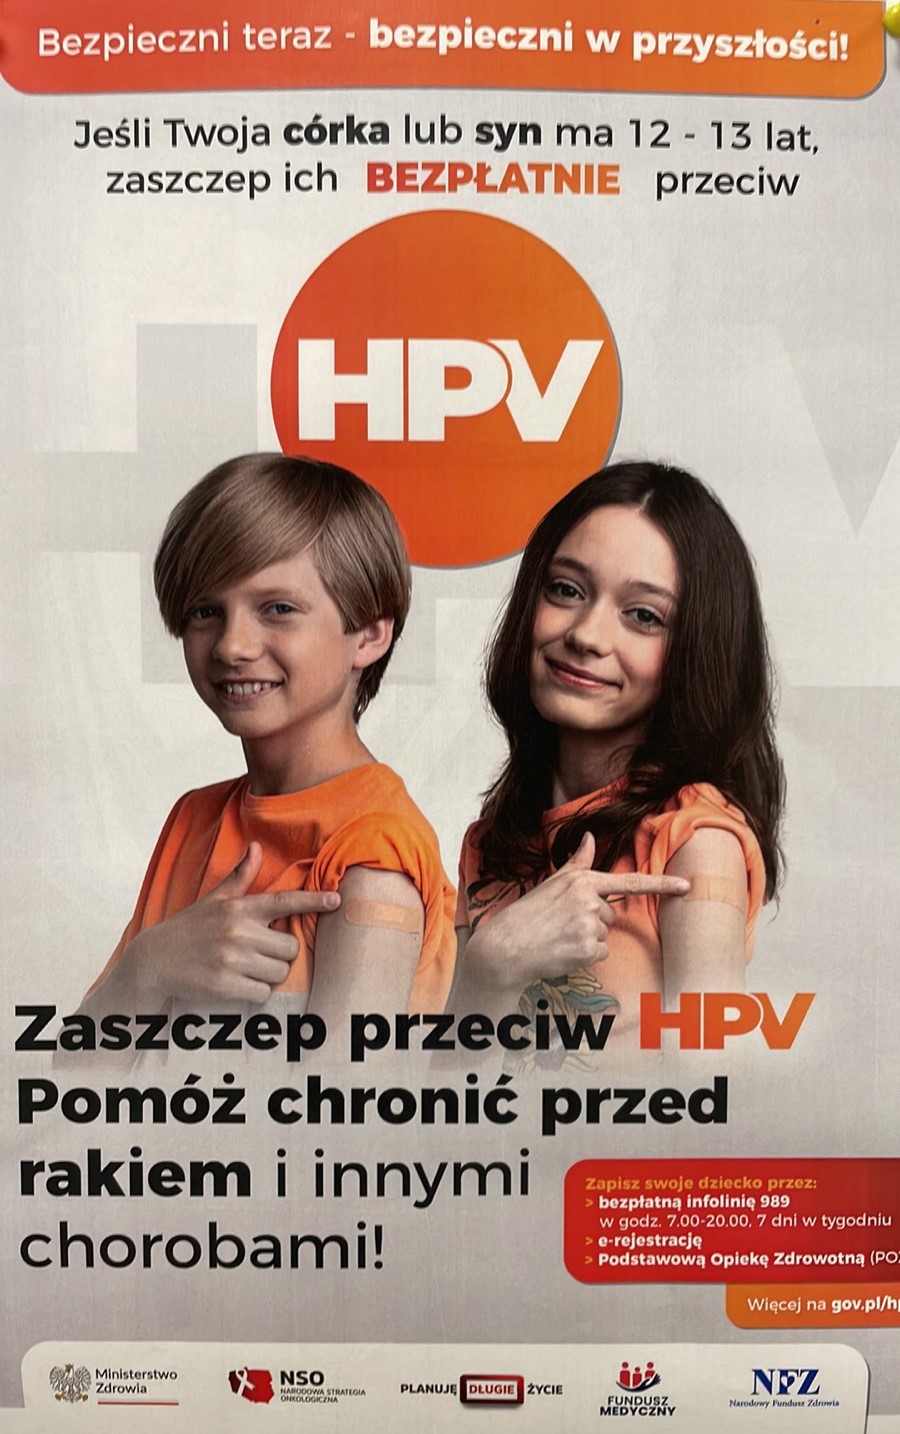 Obrazek wyróżniający SZCZEPIENIA PRZECIW HPV